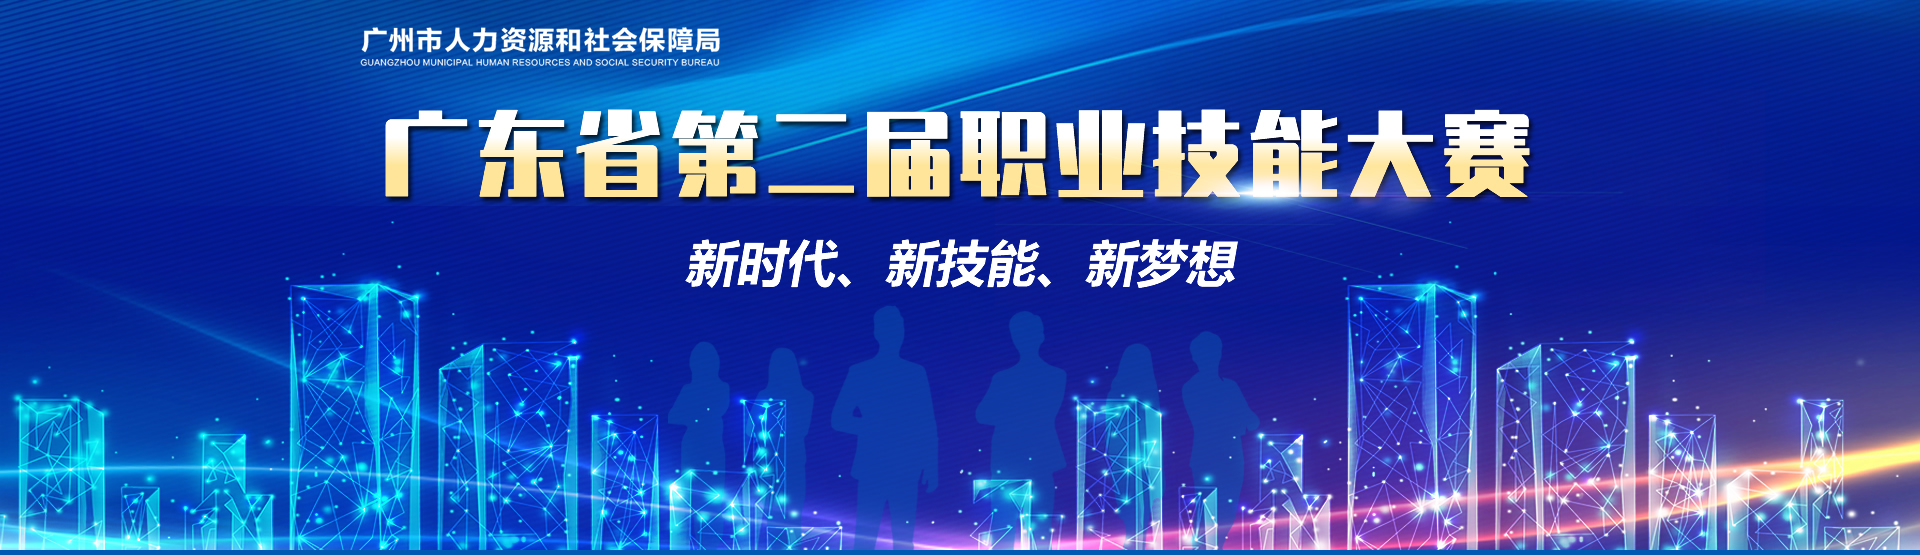 广东省第二届职业技能大赛-广州市人力资源和社会保障局网站